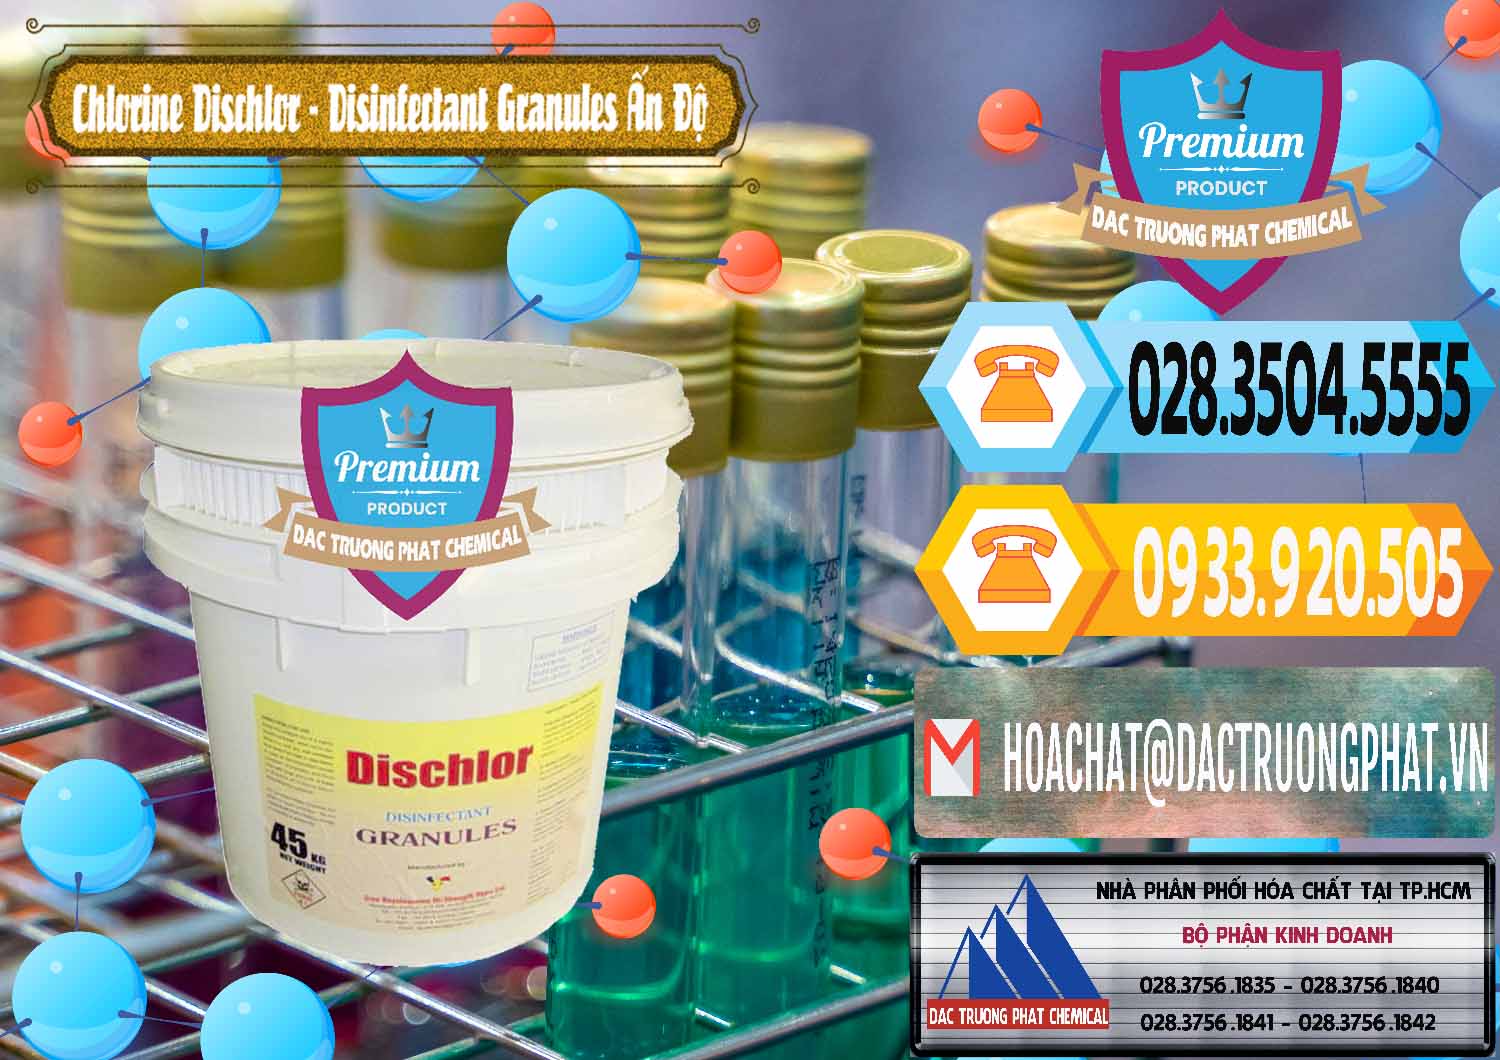 Nơi chuyên nhập khẩu và bán Chlorine – Clorin 70% Dischlor - Disinfectant Granules Ấn Độ India - 0248 - Cty chuyên nhập khẩu - phân phối hóa chất tại TP.HCM - hoachattayrua.net